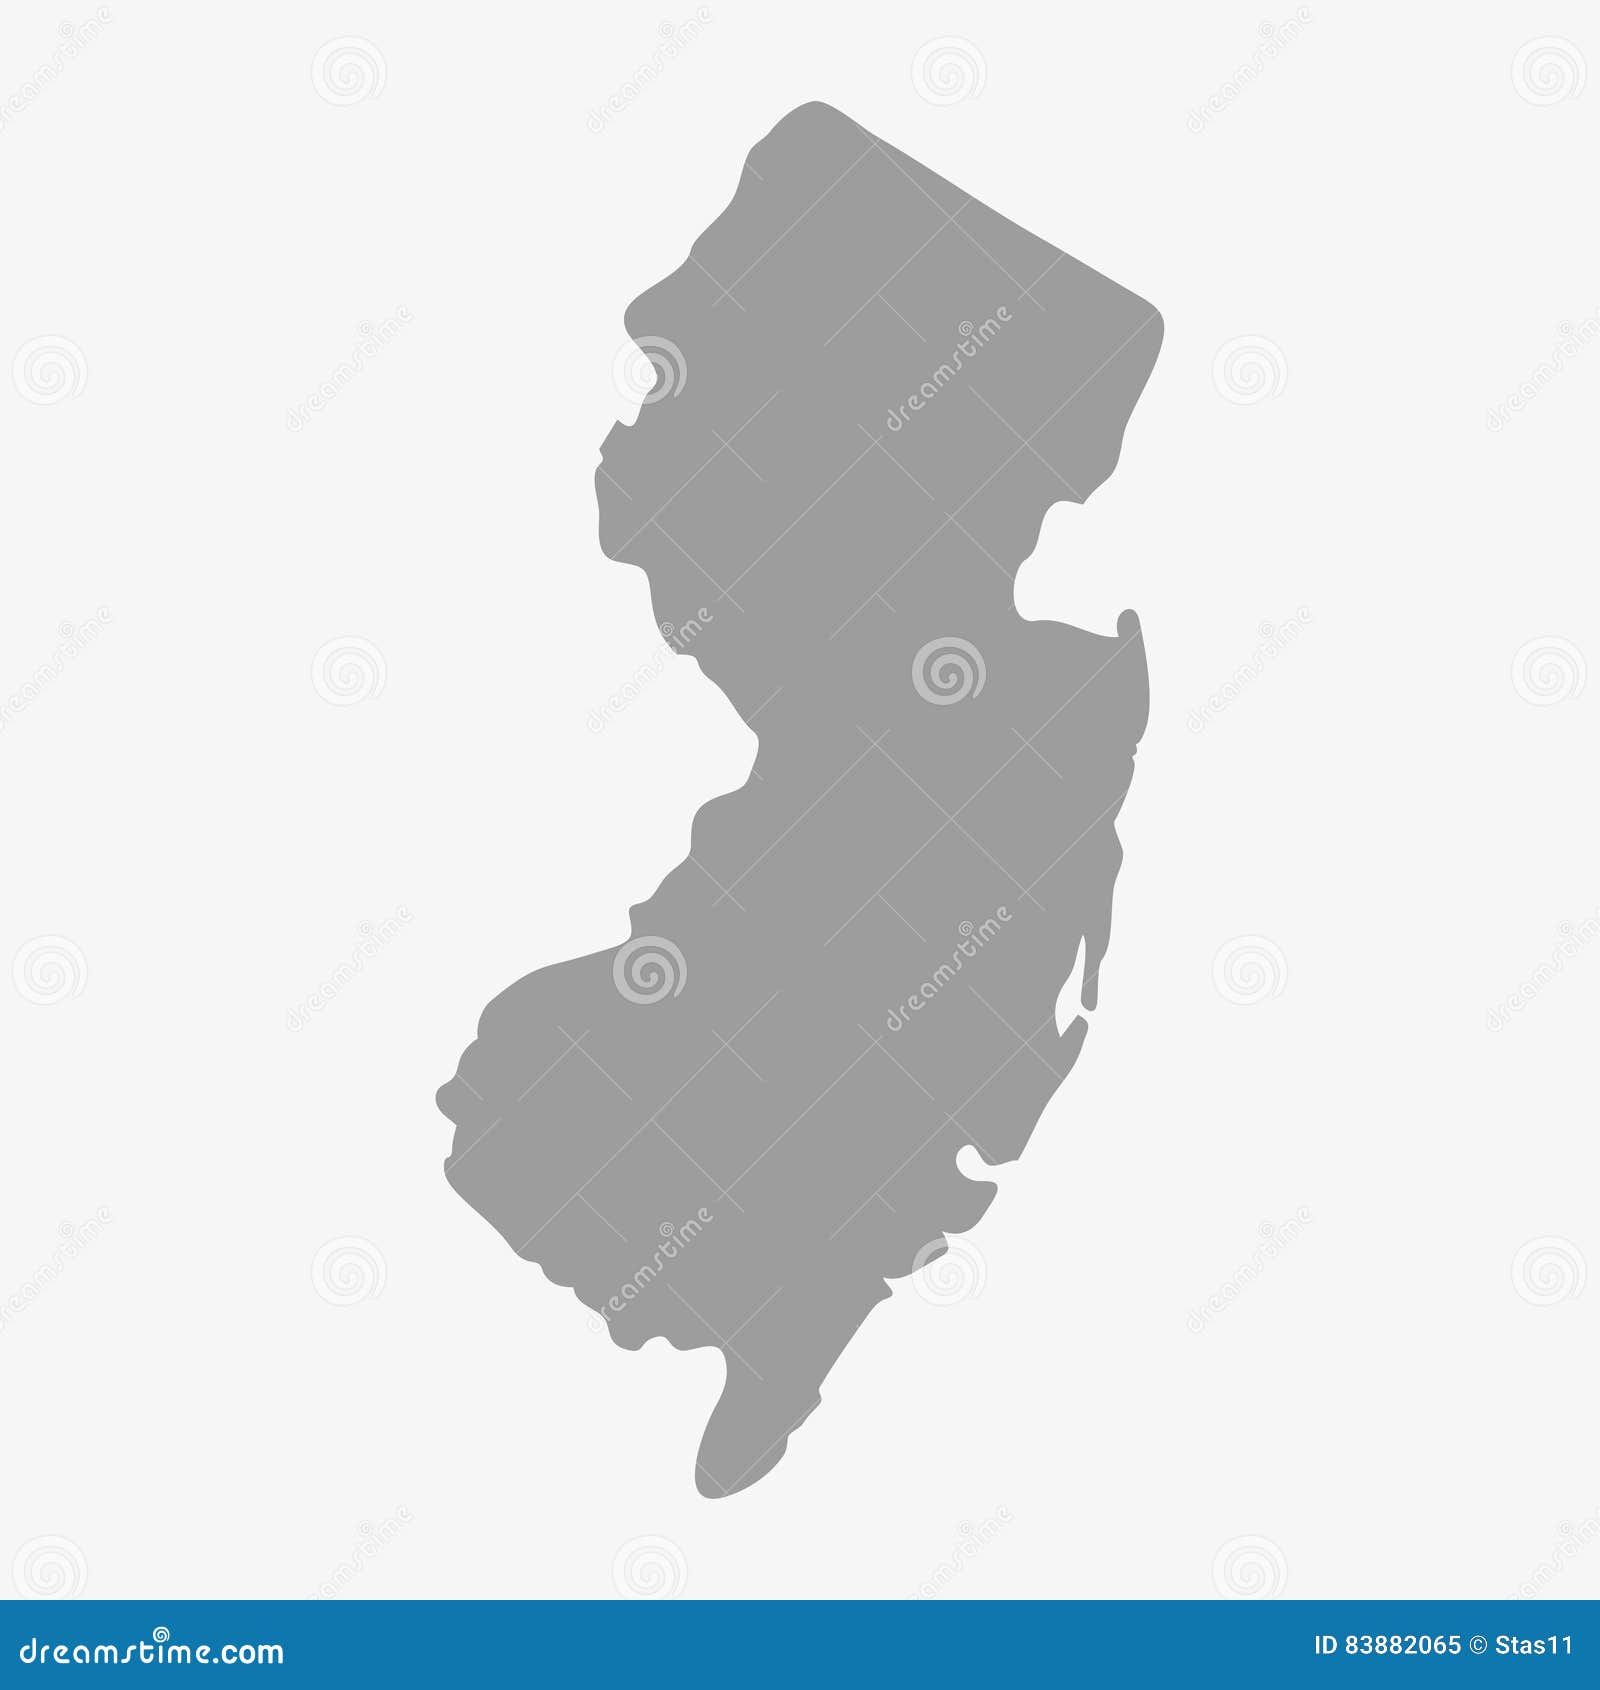 纽约州地图高清版大图,新泽西州地图 - 伤感说说吧